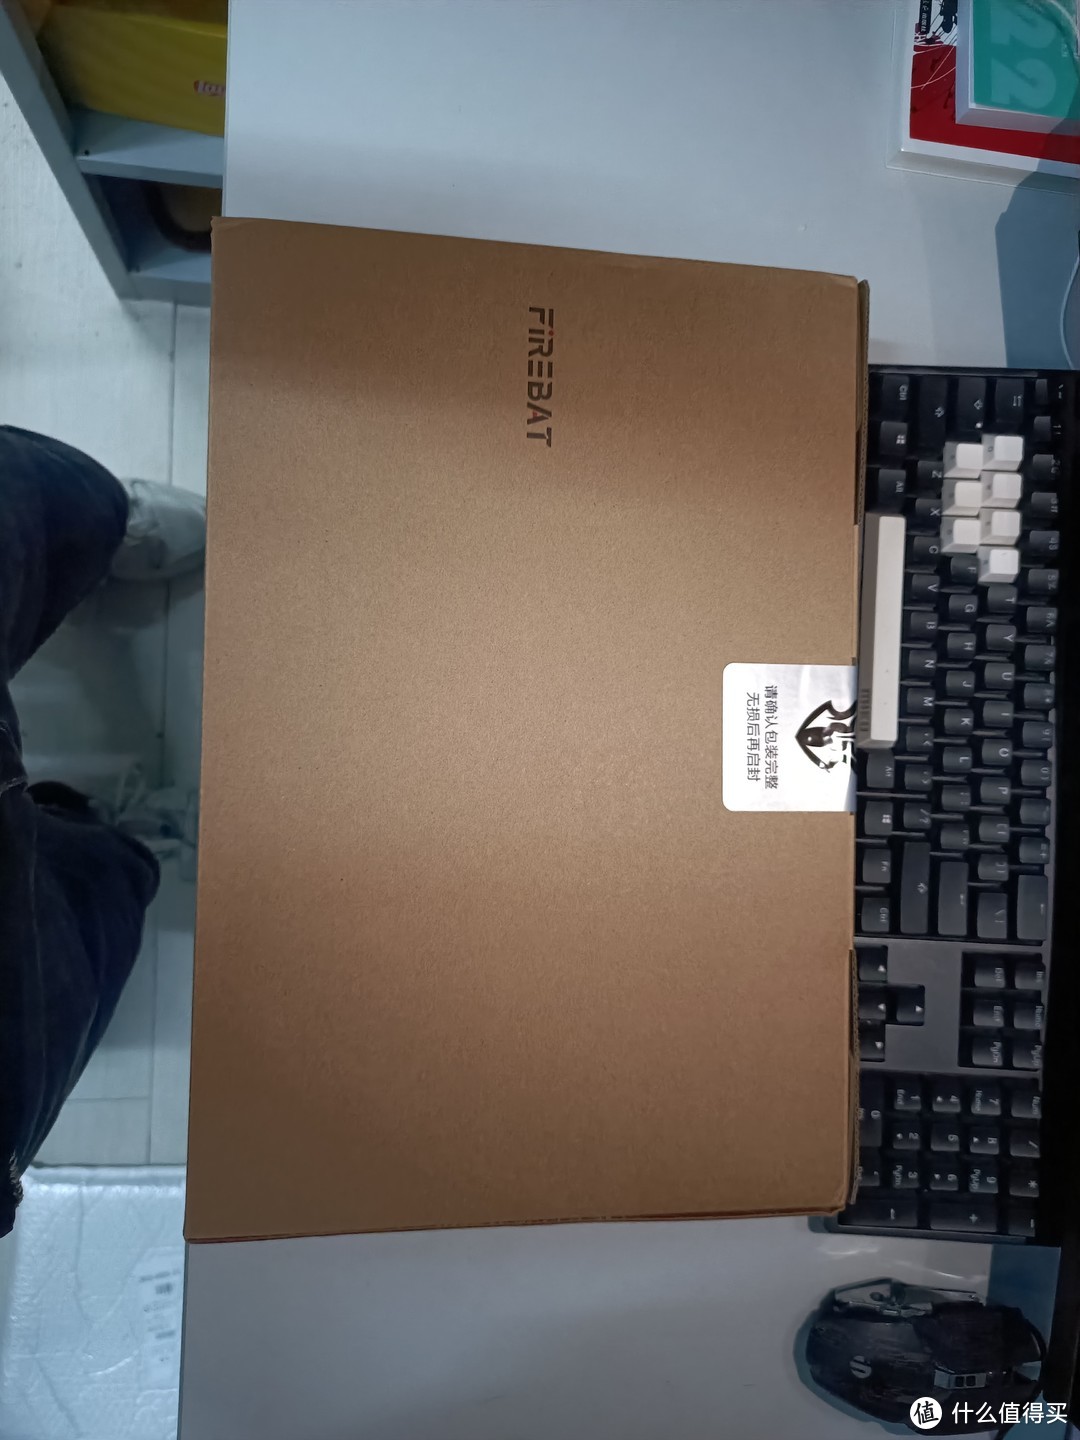 火影 众颜U4，目前最便宜R7-6800H笔记本，已在木叶村，目前感觉良好